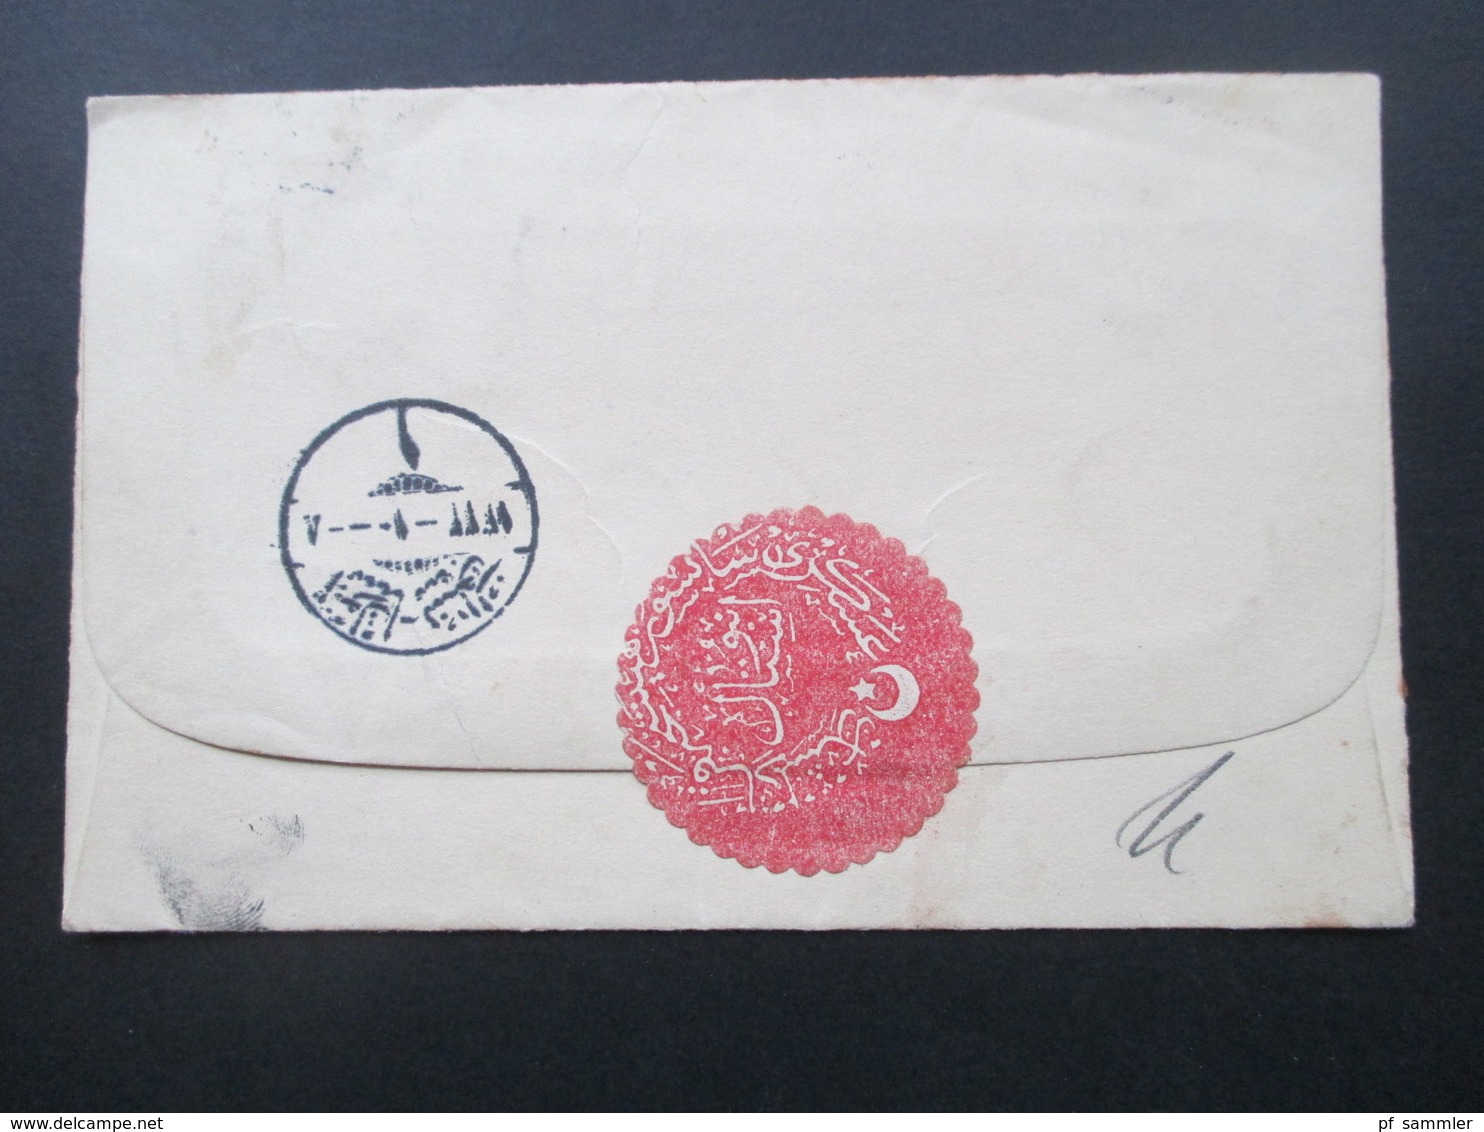 Türkei 1916 Einschreiben Zettel Vom Auslande über Bahnpost 5 nach Harburg Marine Kohlenlager Oberdeckoffizier